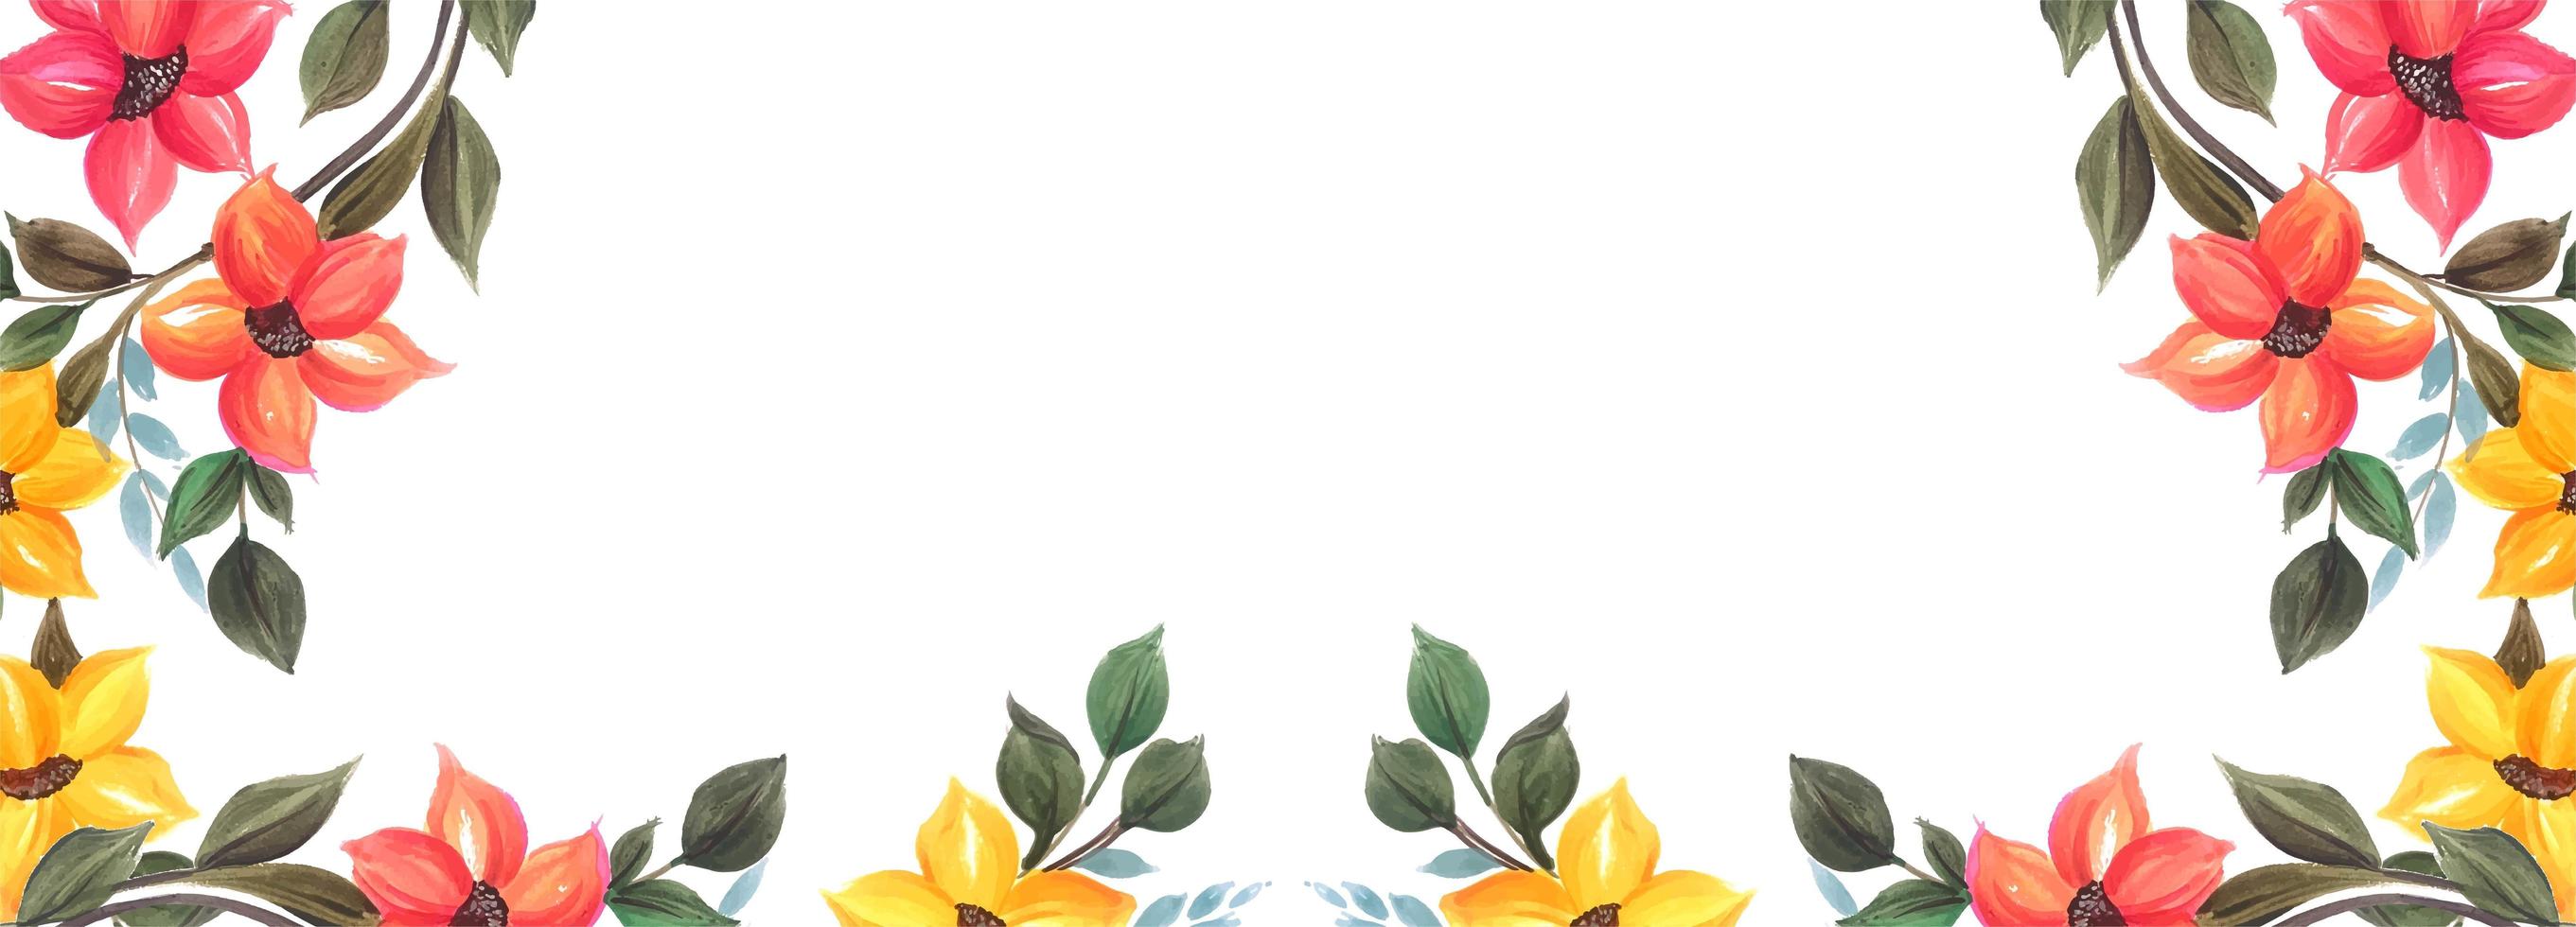 Design de fond de bannière floral coloré vecteur